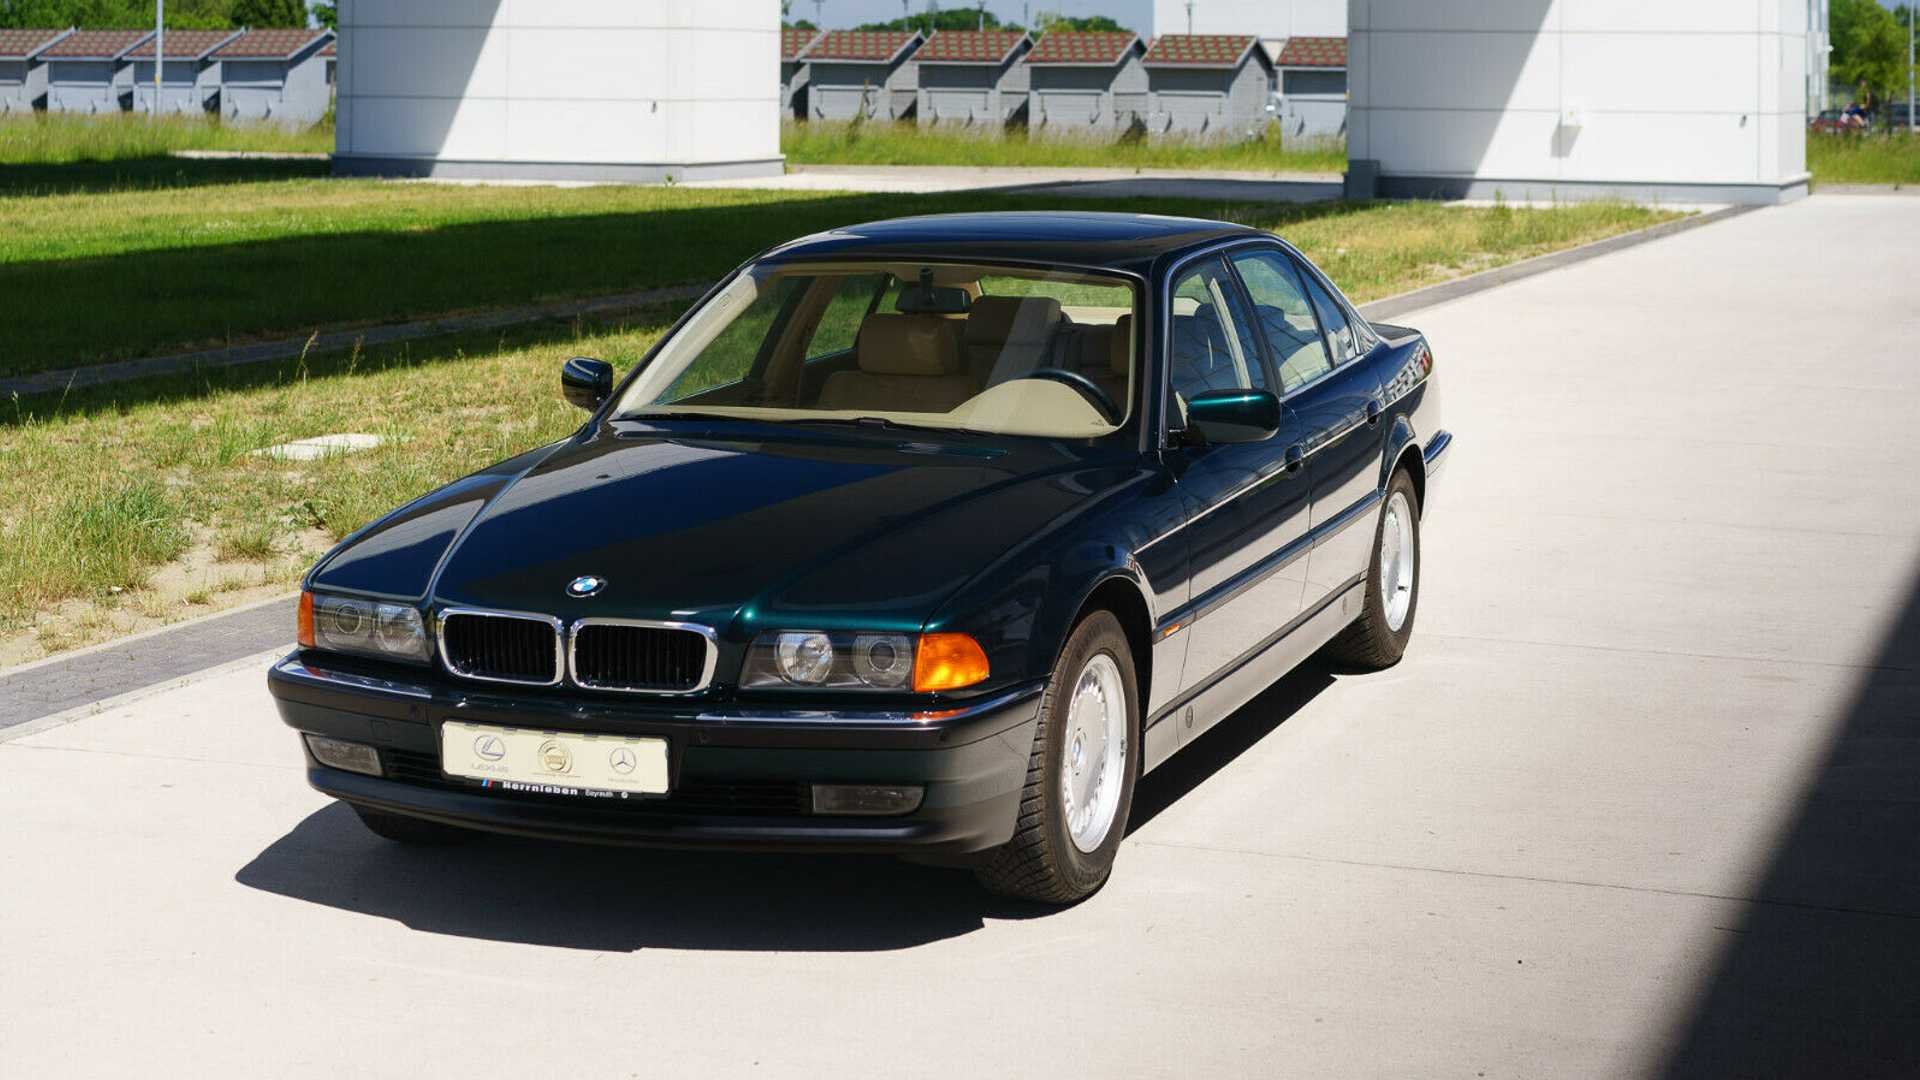 Поляк 20 лет хранил BMW E38 под пластиковым колпаком (а теперь продает) готов, машины, автомобиль, «экспоната», «автоматом»Цена, 5ступенчатым, совмещенный, мощностью, серии, «атмосферник», 44литровый, располагается, Германии, капотом, момент, пылиПод, действительно, кузове, салоне, видно